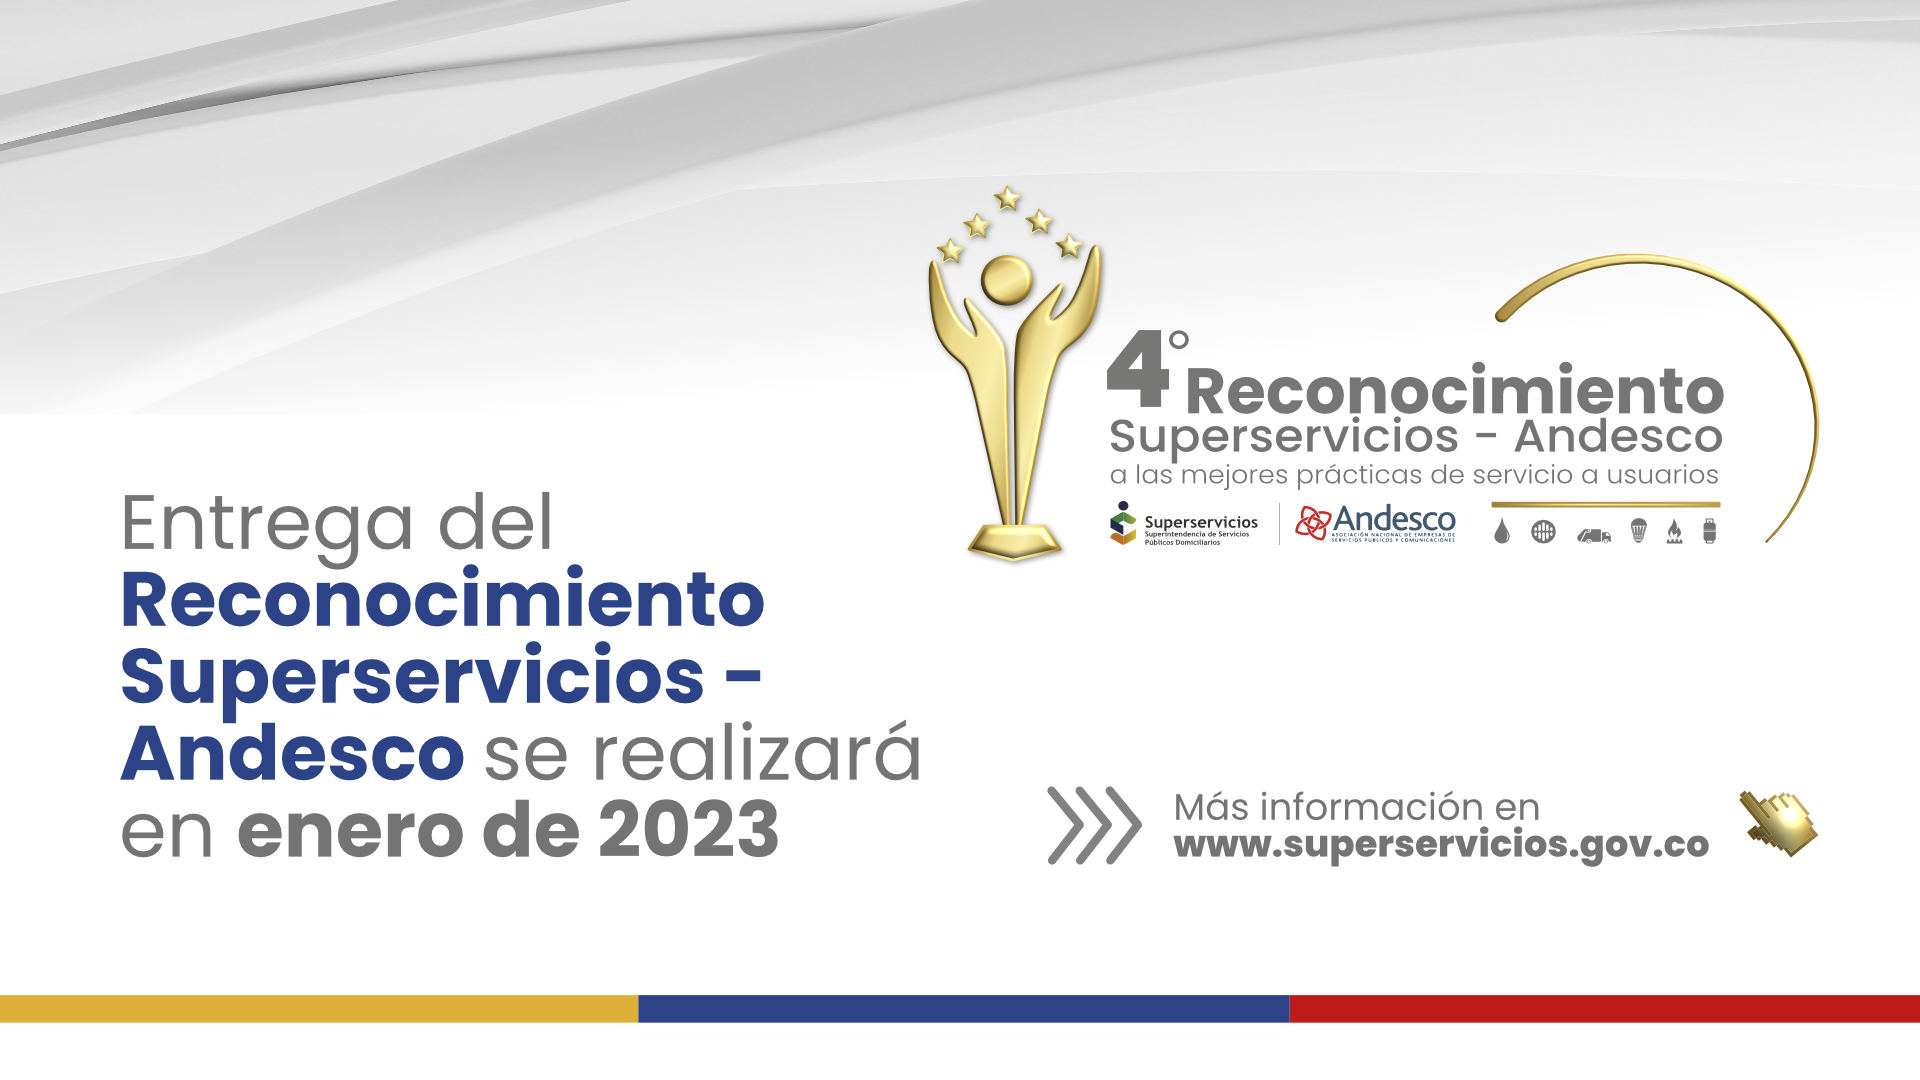  Entrega del Reconocimiento Superservicios - Andesco se realizará en enero de 2023
